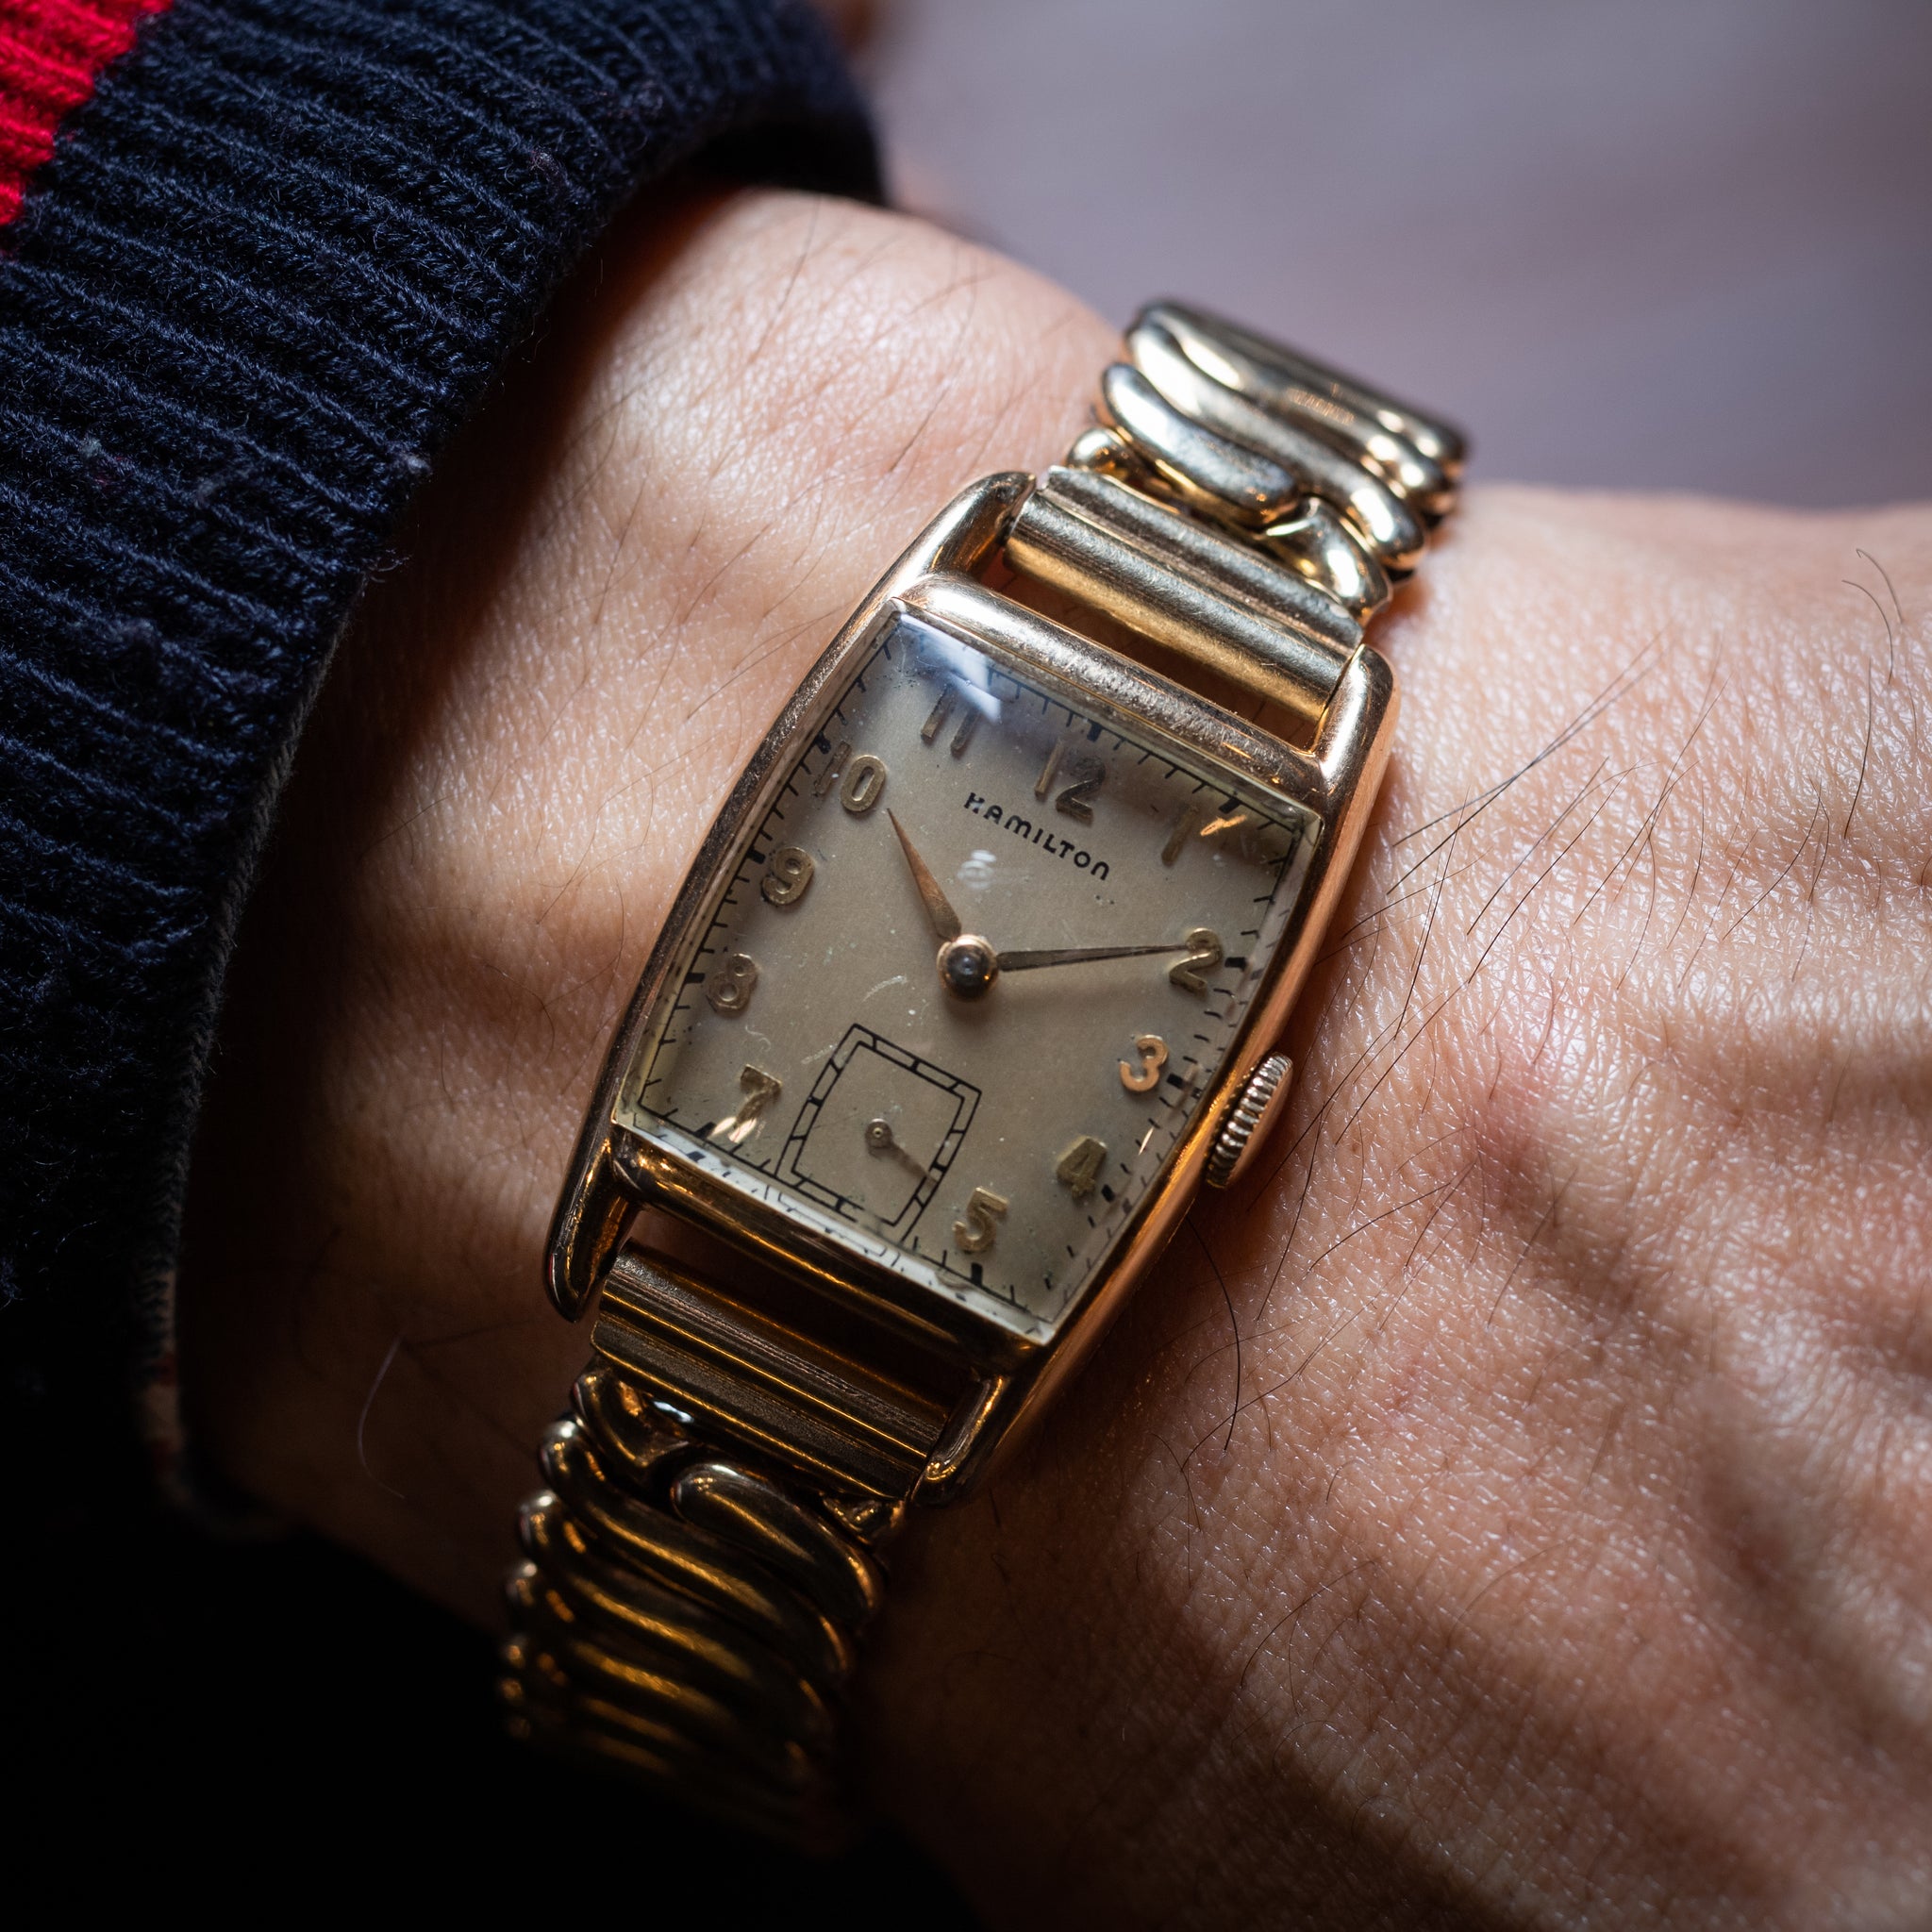 ハミルトンCal.980腕時計10KGF金張り手巻きメンズ/レディース40年代サトお得情報はプロフみてね時計